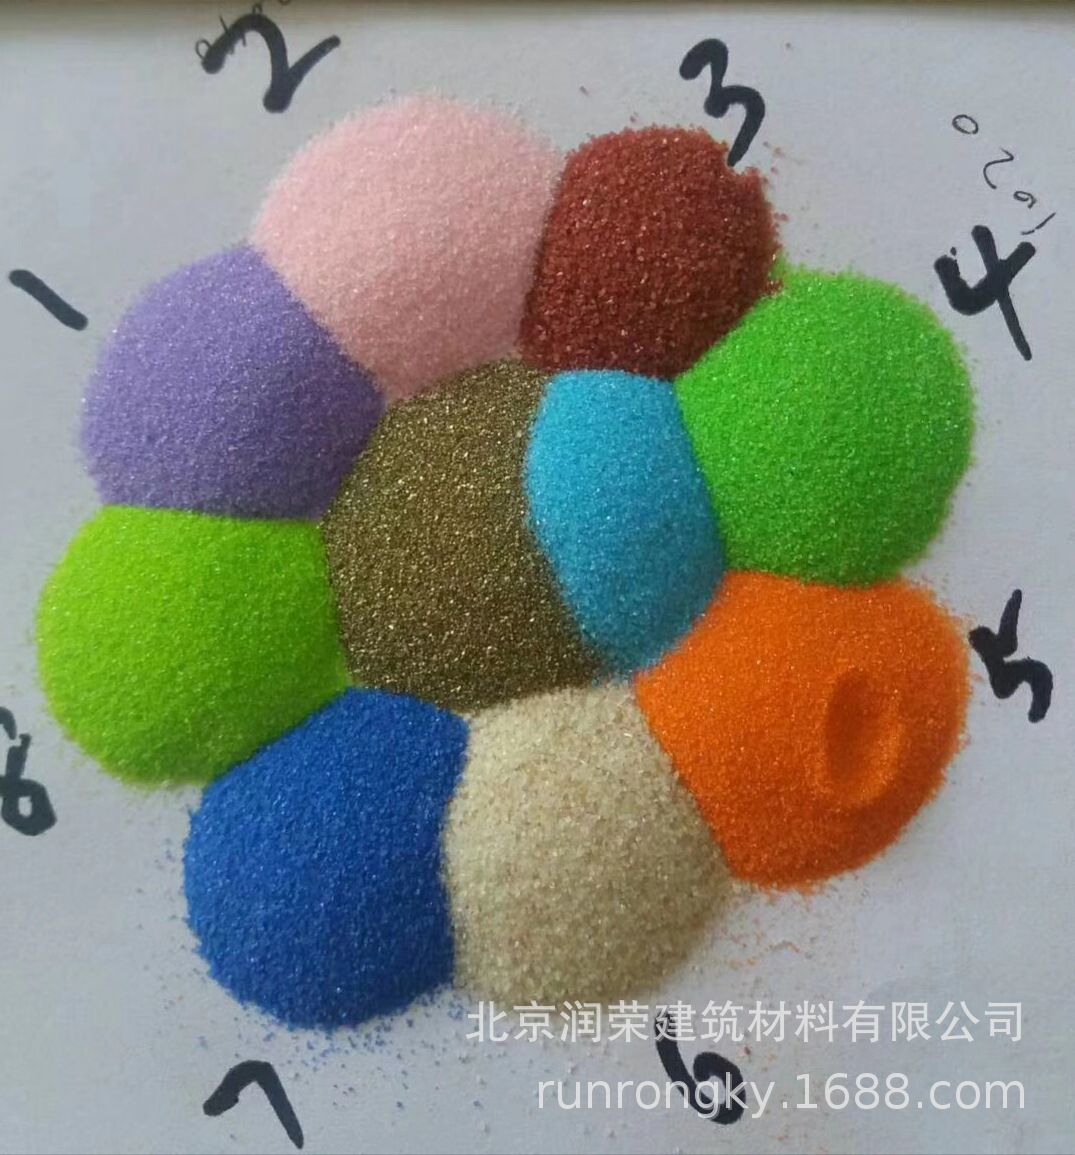 各种颜色彩砂 (1)